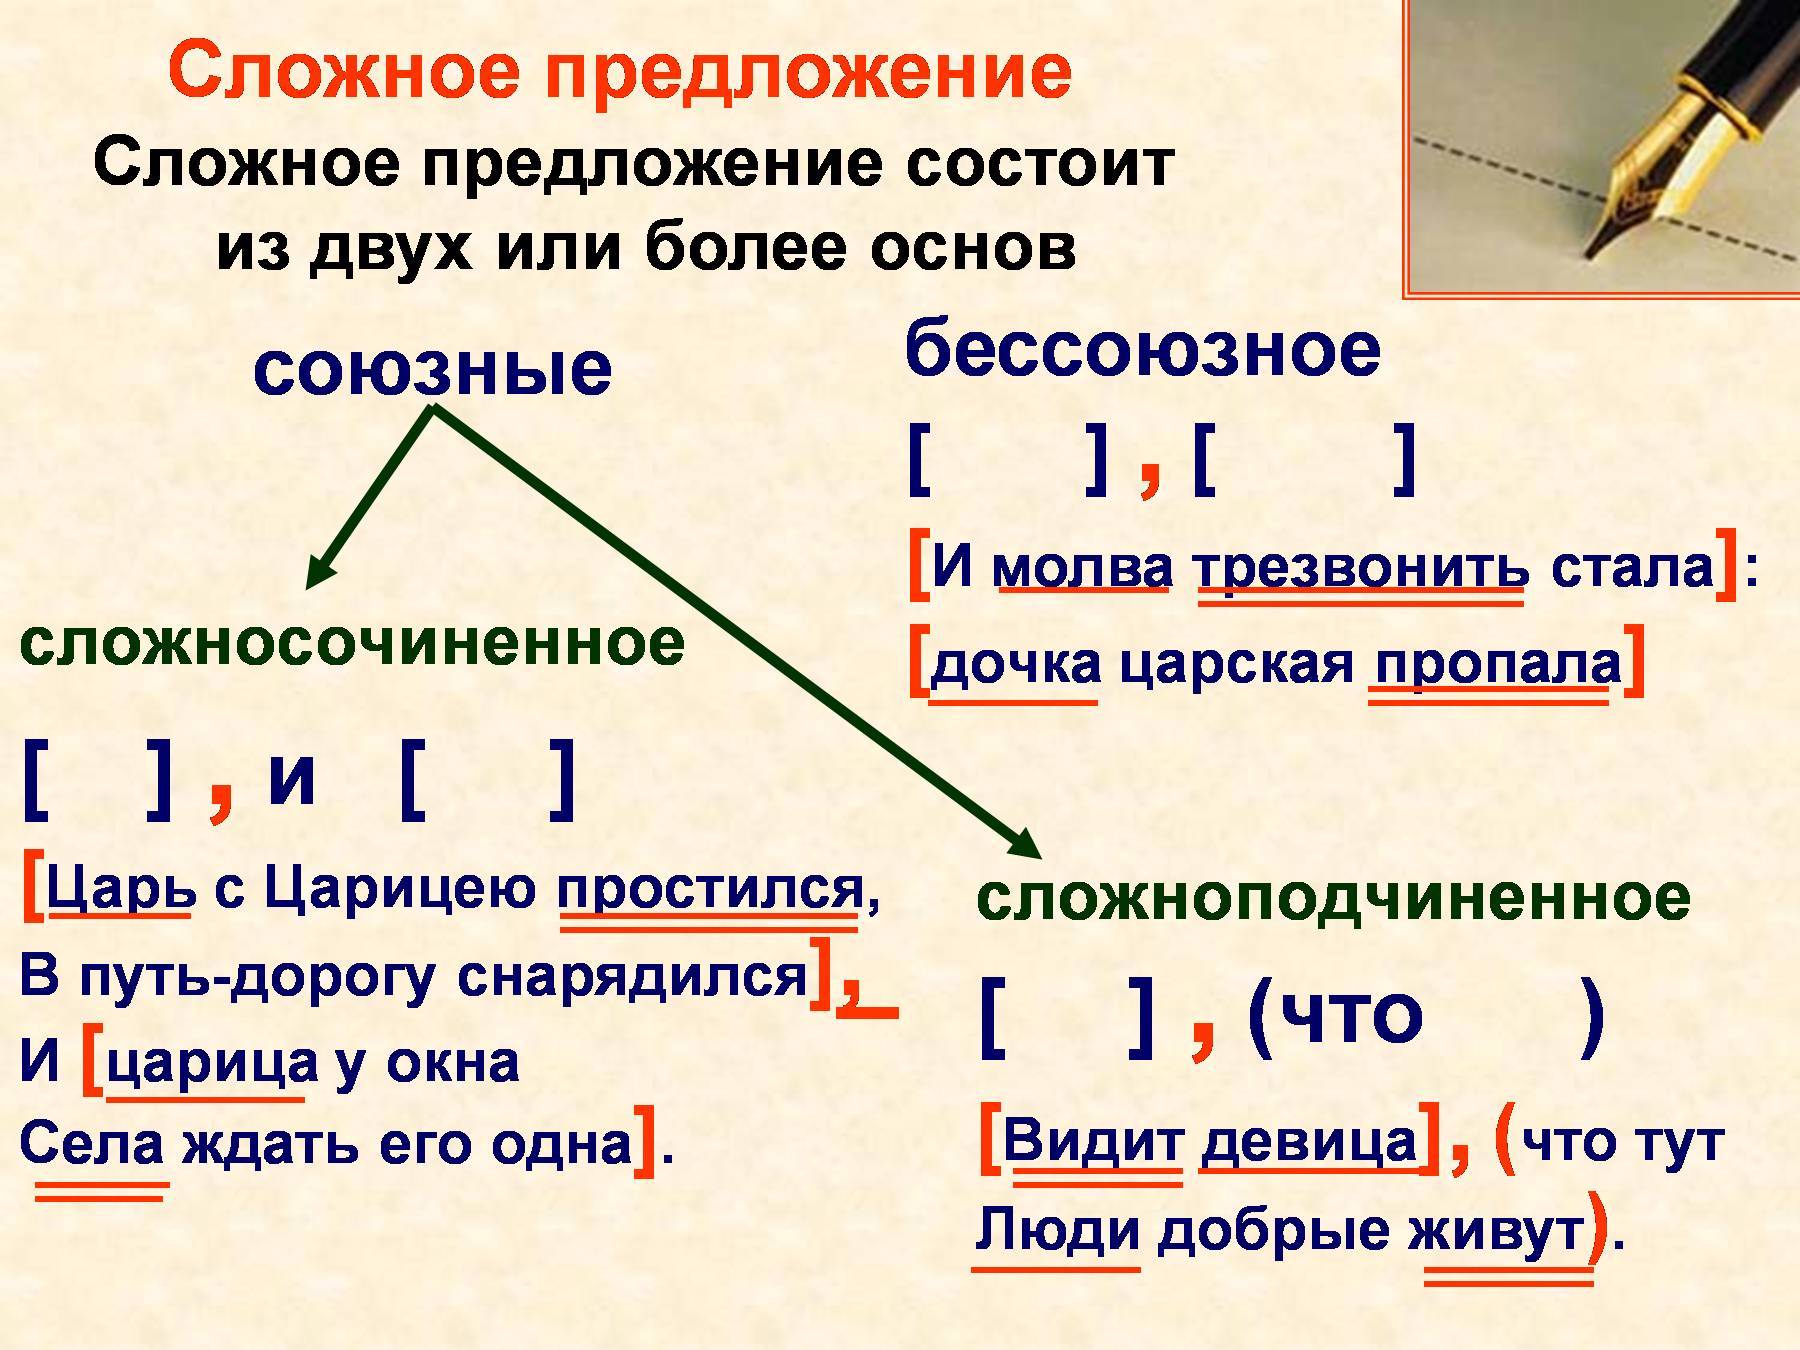 Распространенное предложение с 1 основой. Что такое сложное предложение 4 класс правило в русском языке. Из чего состоит сложное предложение в русском языке. Синтаксис сложного предложения. Слоржныеп предложения.